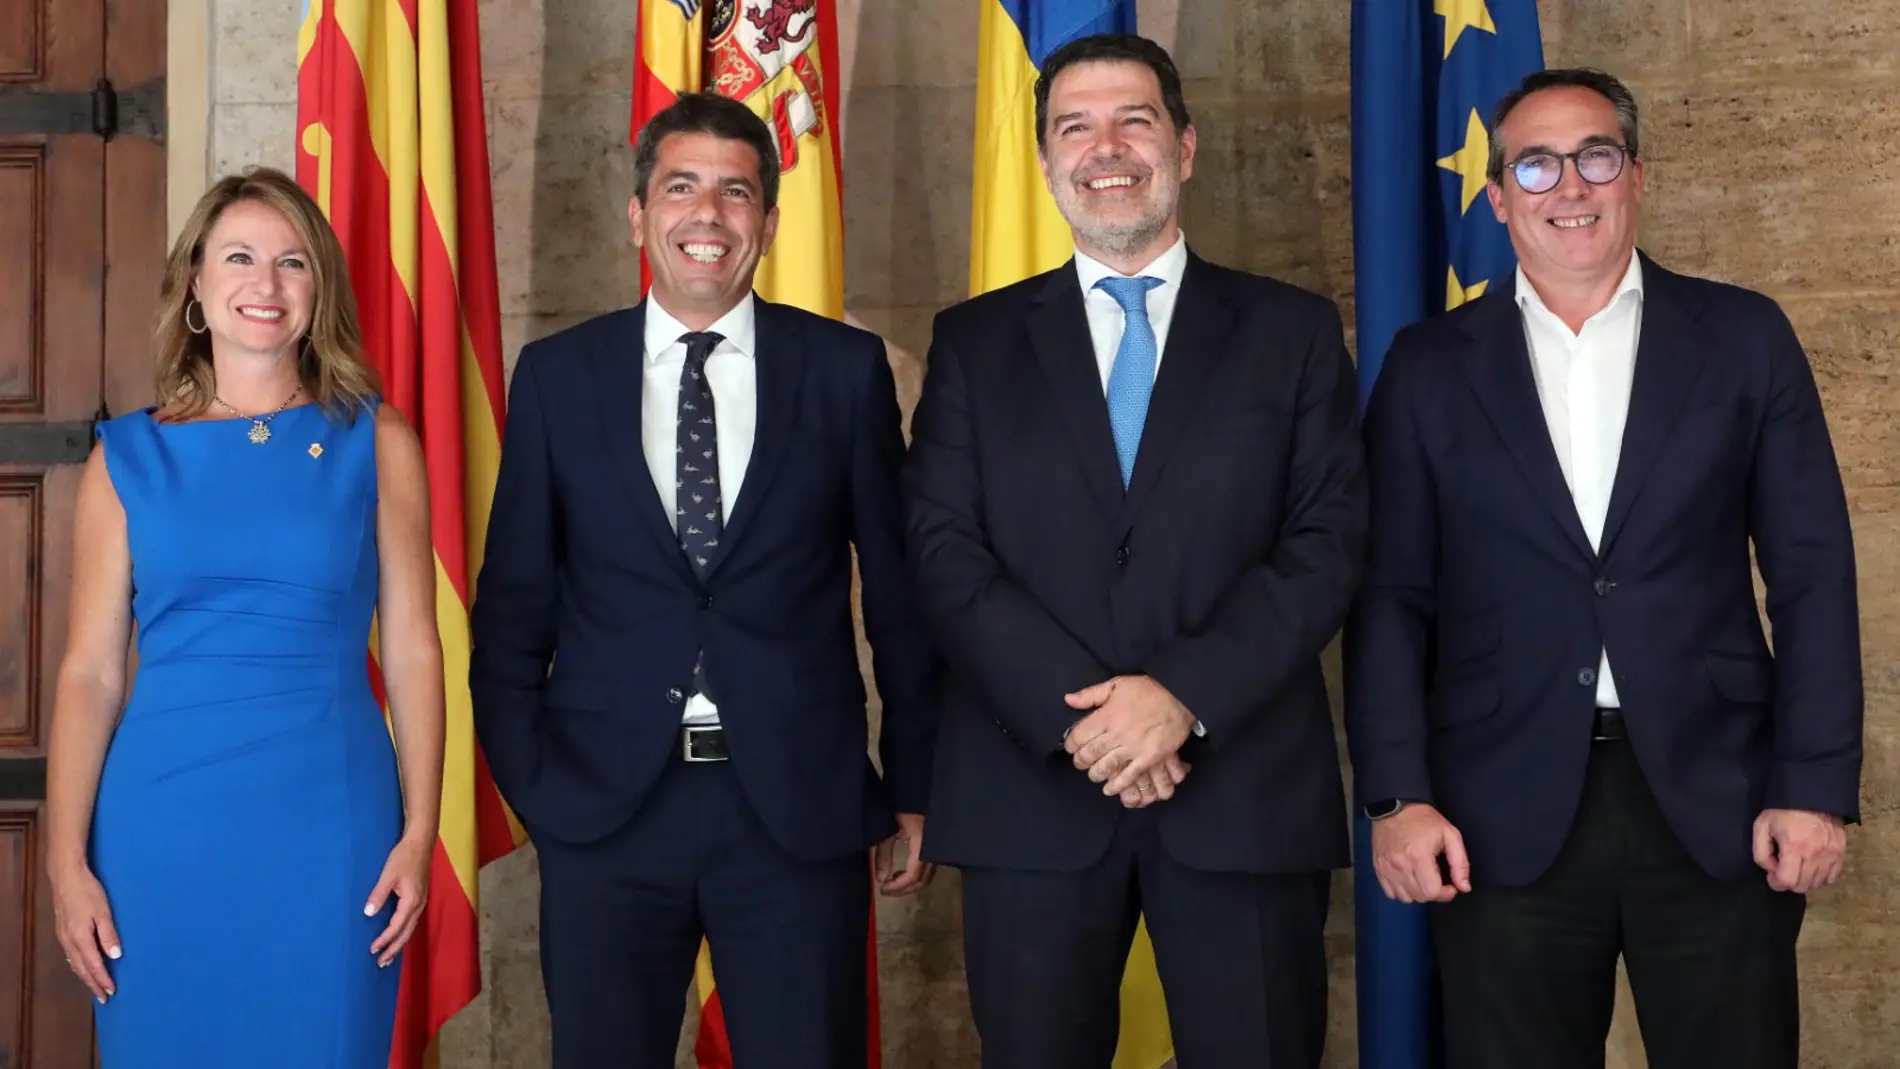 Carrasco: “Hoy damos un paso más en nuestra apuesta por hacer de Castellón un destino inversor que genere nuevas oportunidades y empleo estable y de calidad en nuestra ciudad”